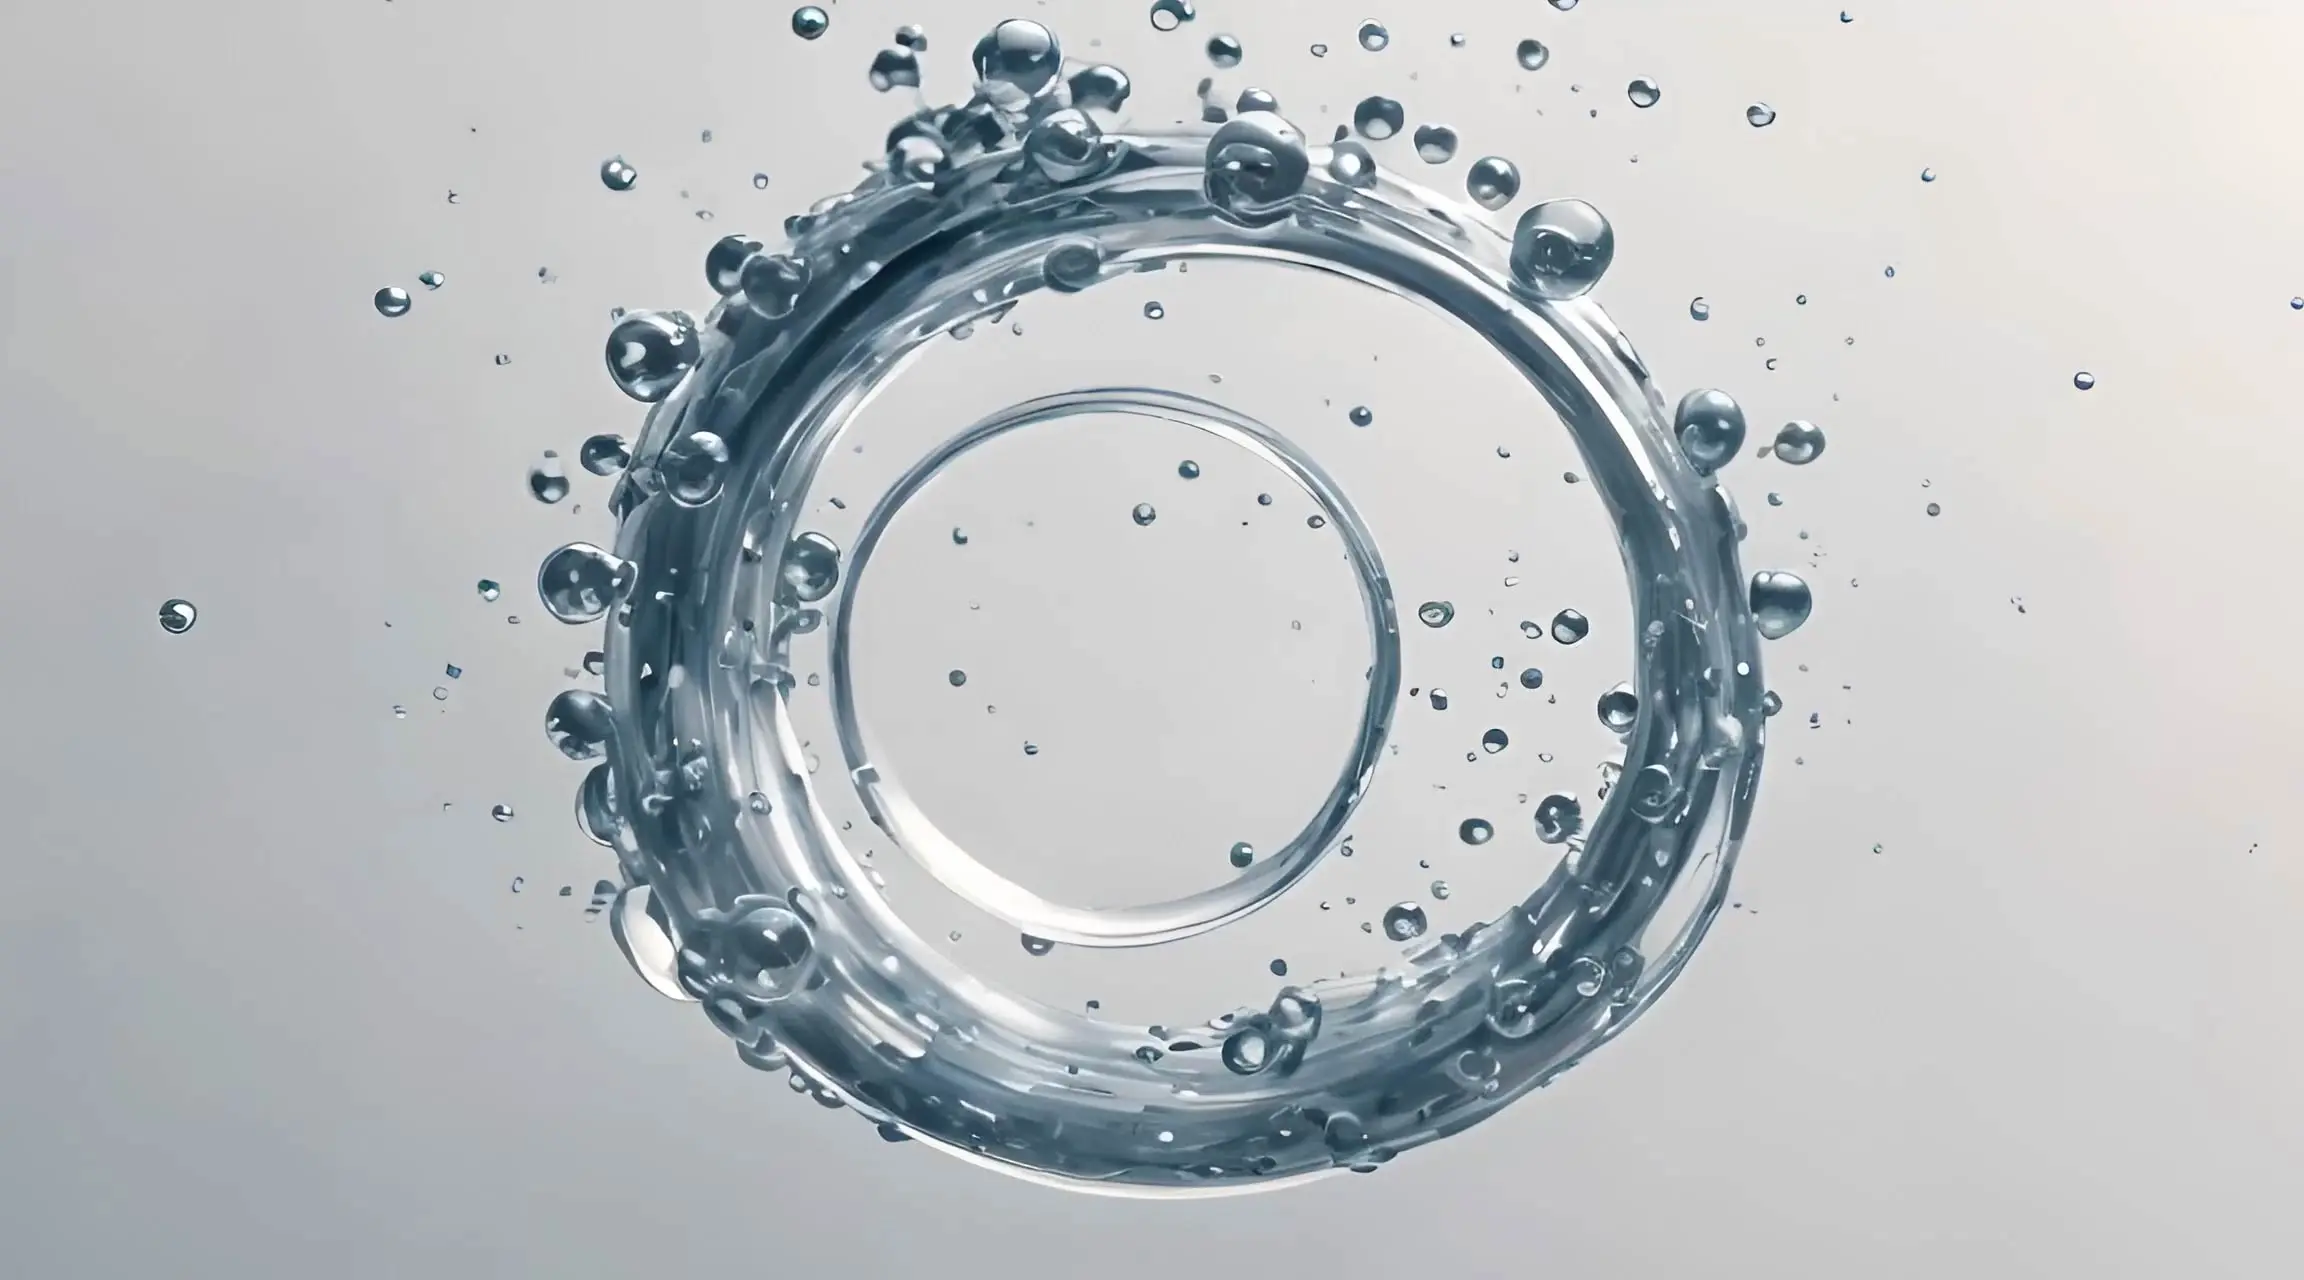 Liquid Loop Refreshing Water Droplets Video